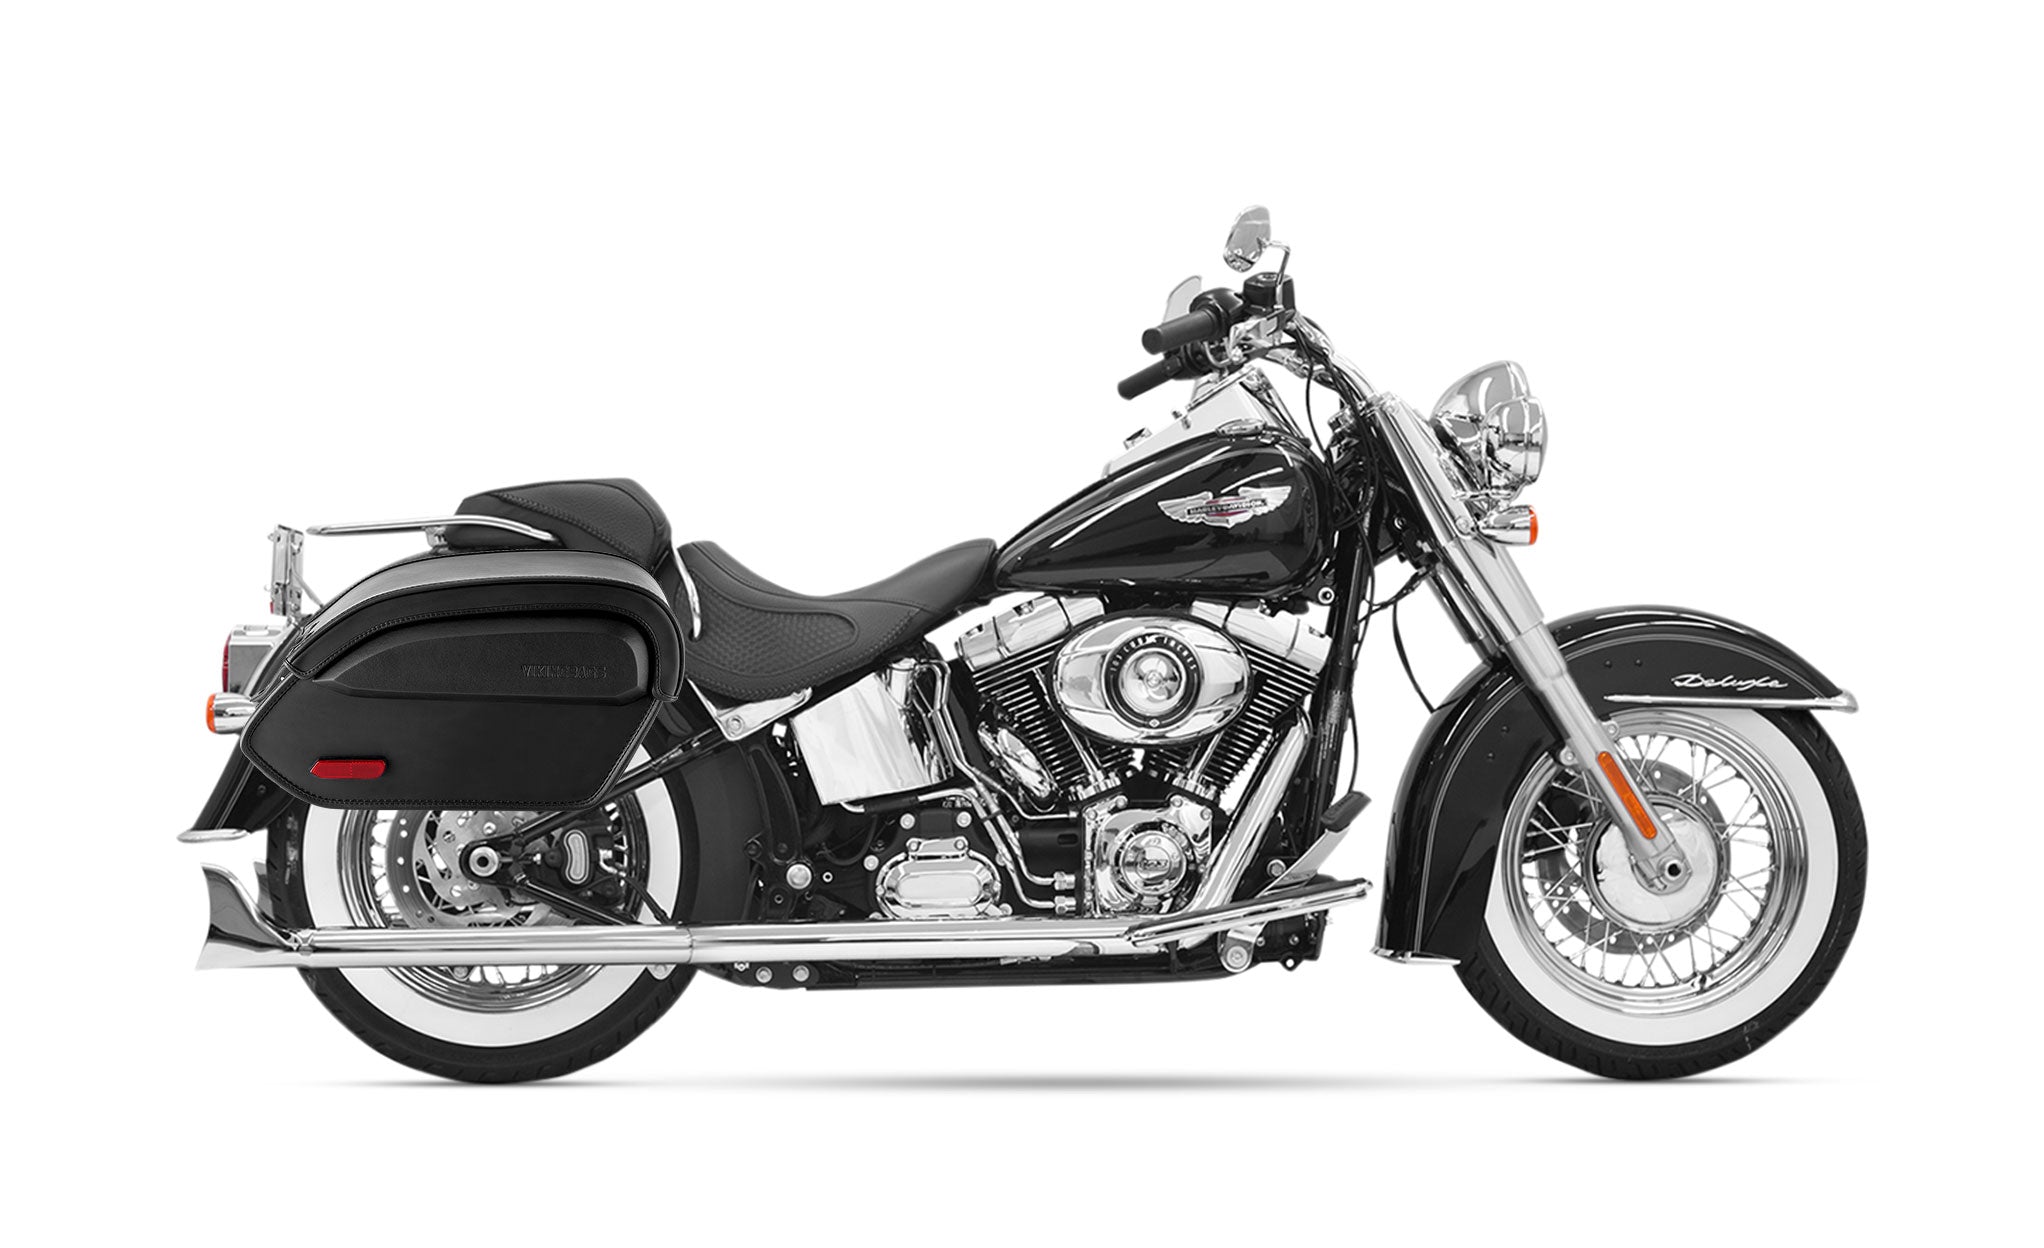 24L - Aviator Large Leather Motorcycle Saddlebags for Harley Softail Heritage FLST/I/C/CI on Bike Photo @expand